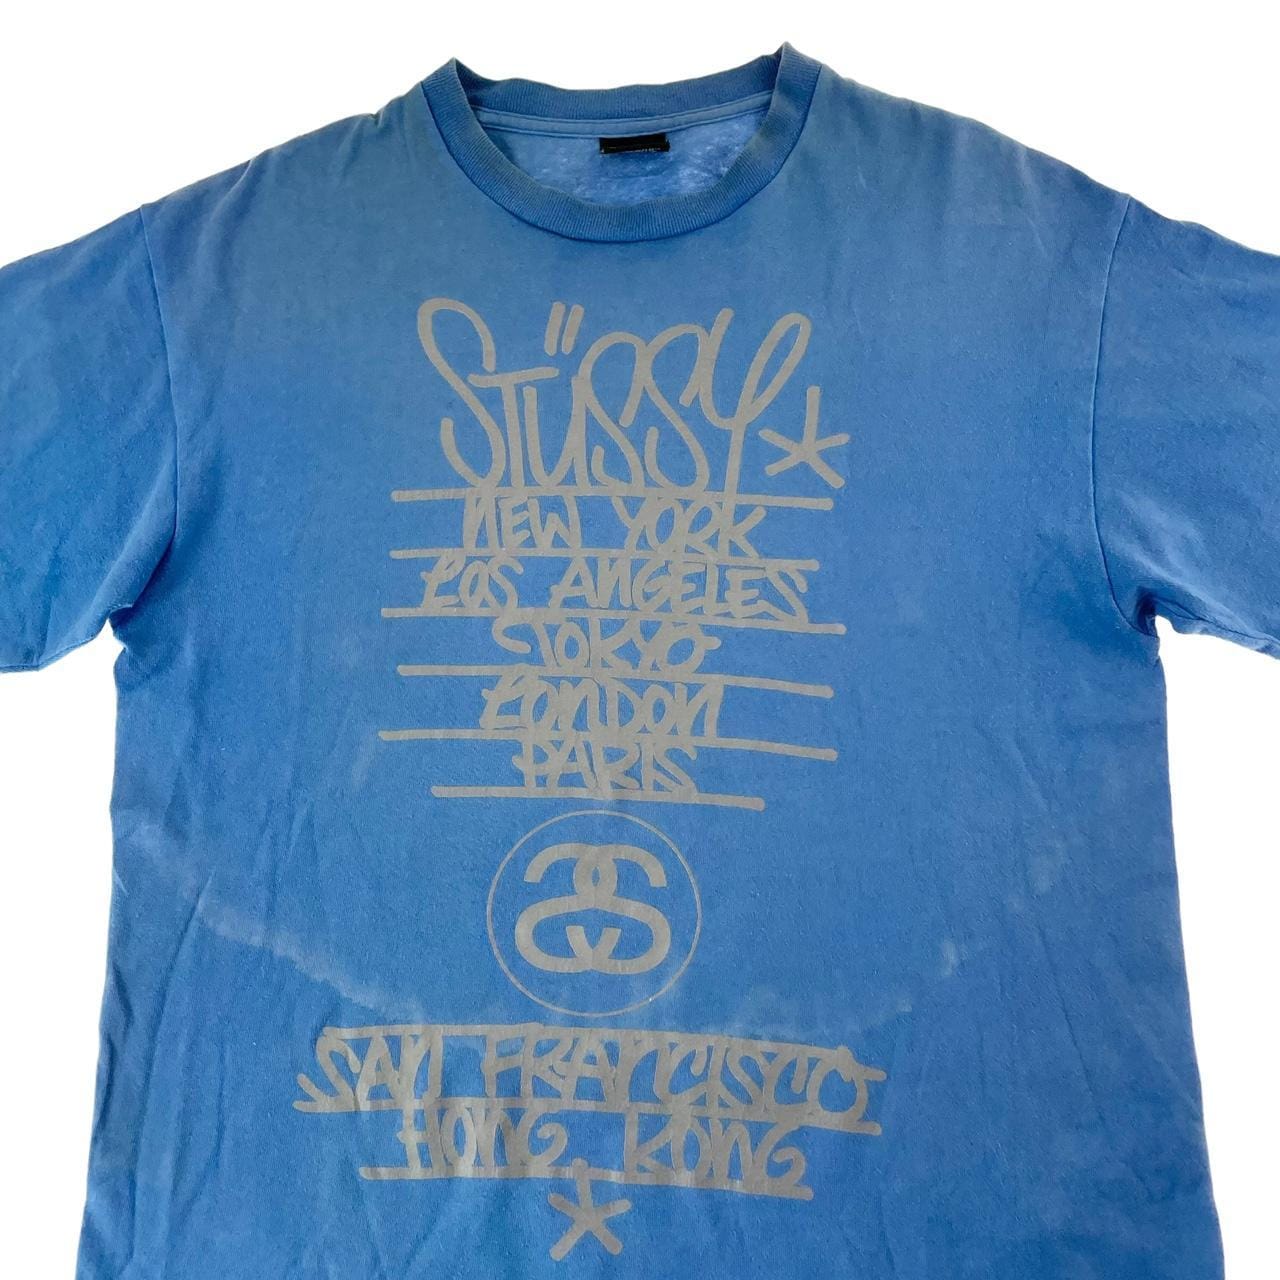 Vintage Stussy skull monogram t shirt size L - second wave vintage store